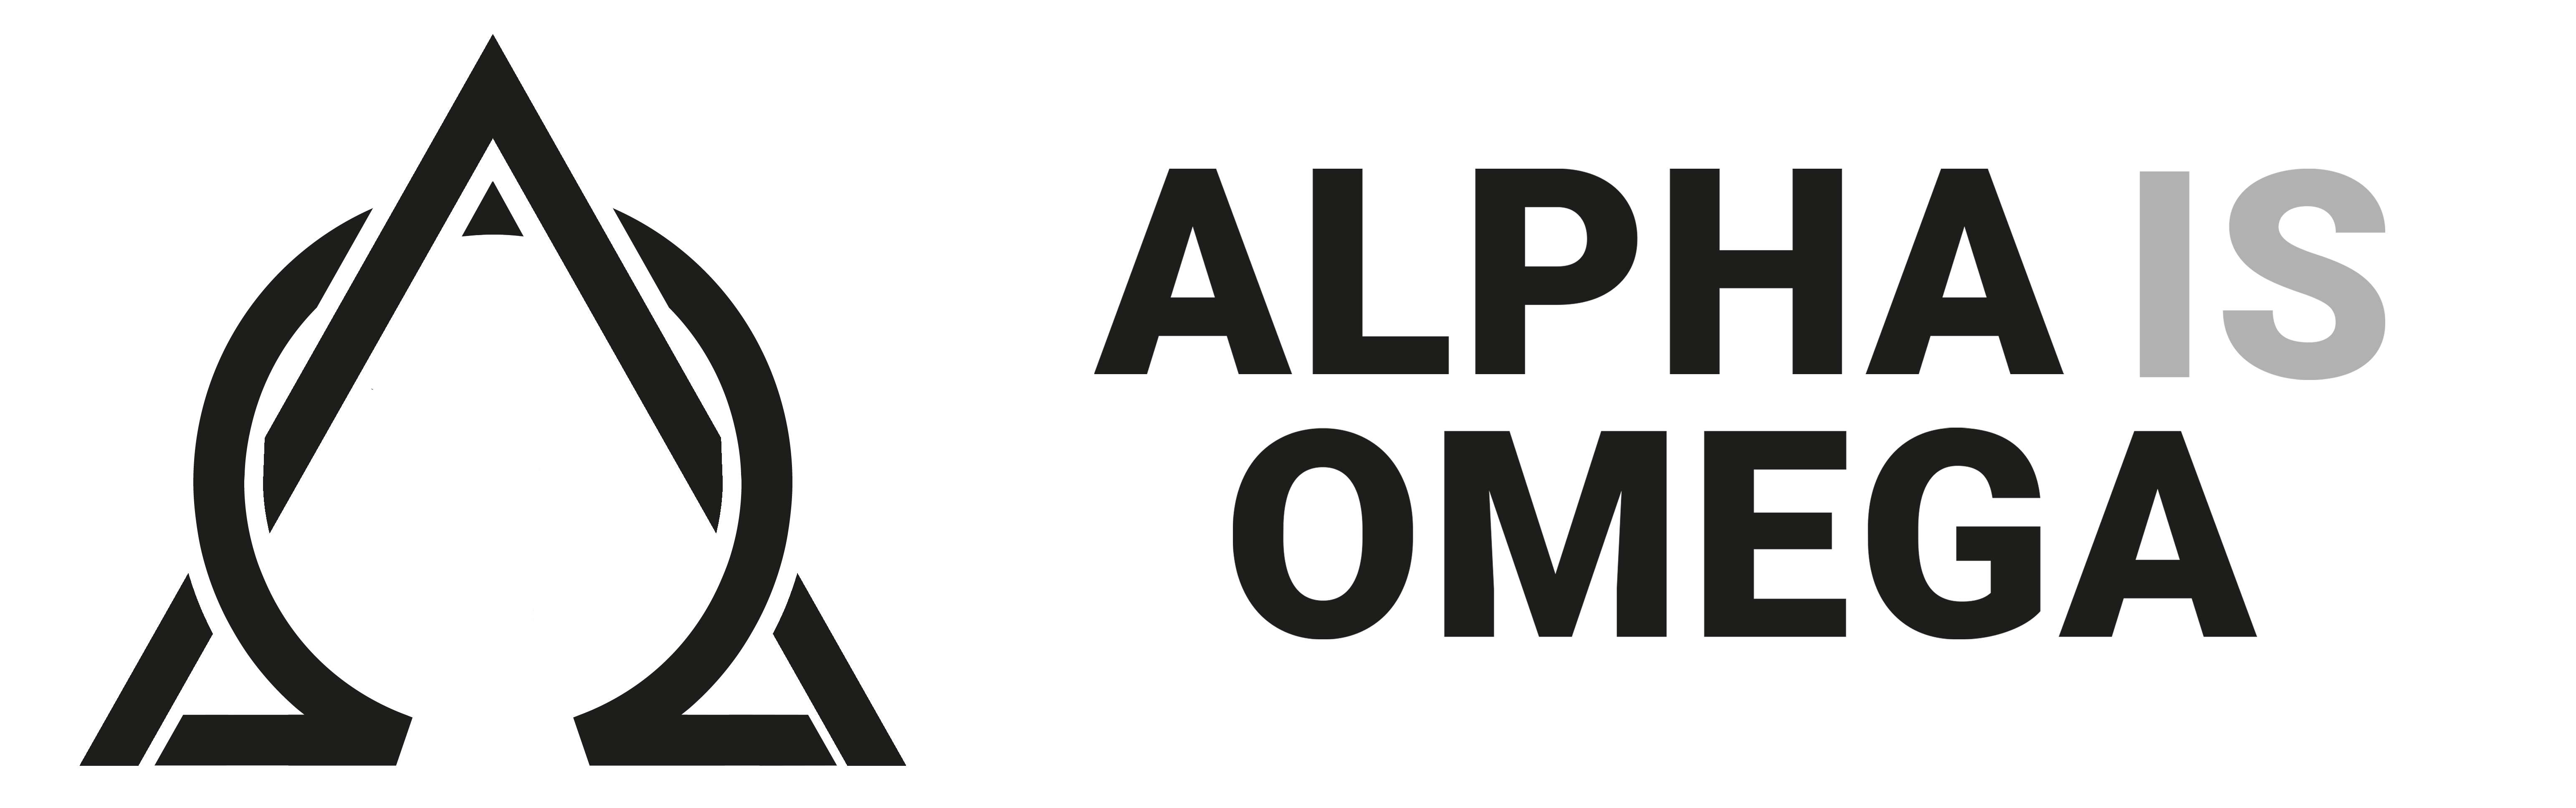 Alpha is Omega